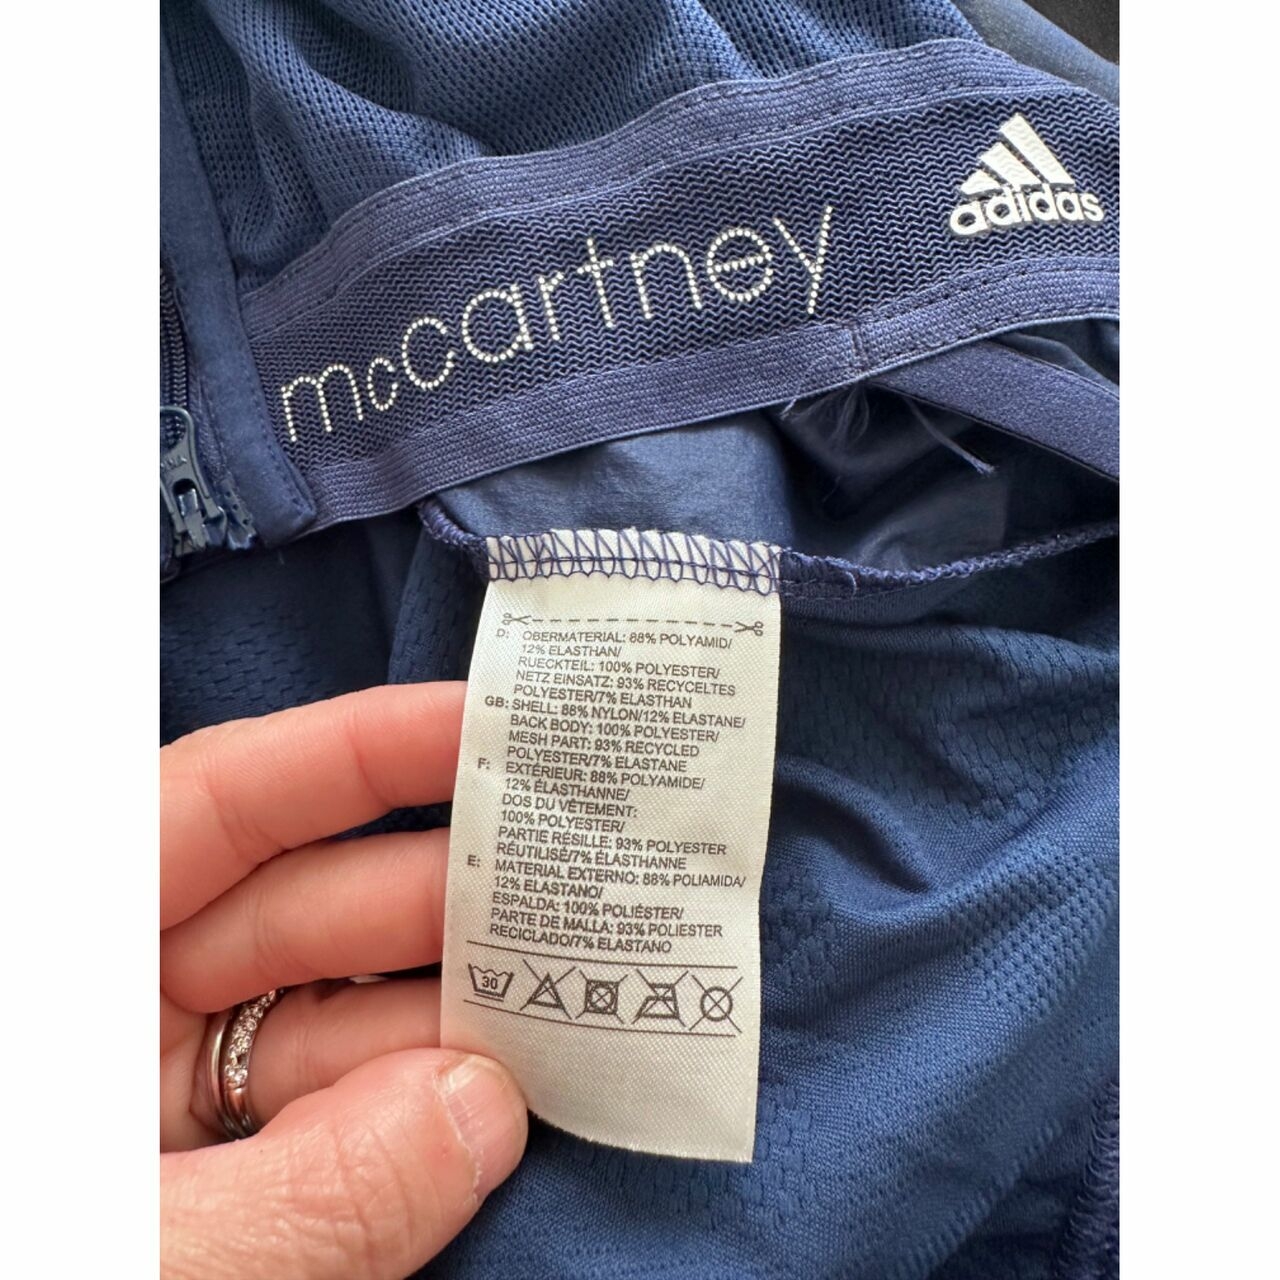 Adidas Stella Mccartney Navy Vest